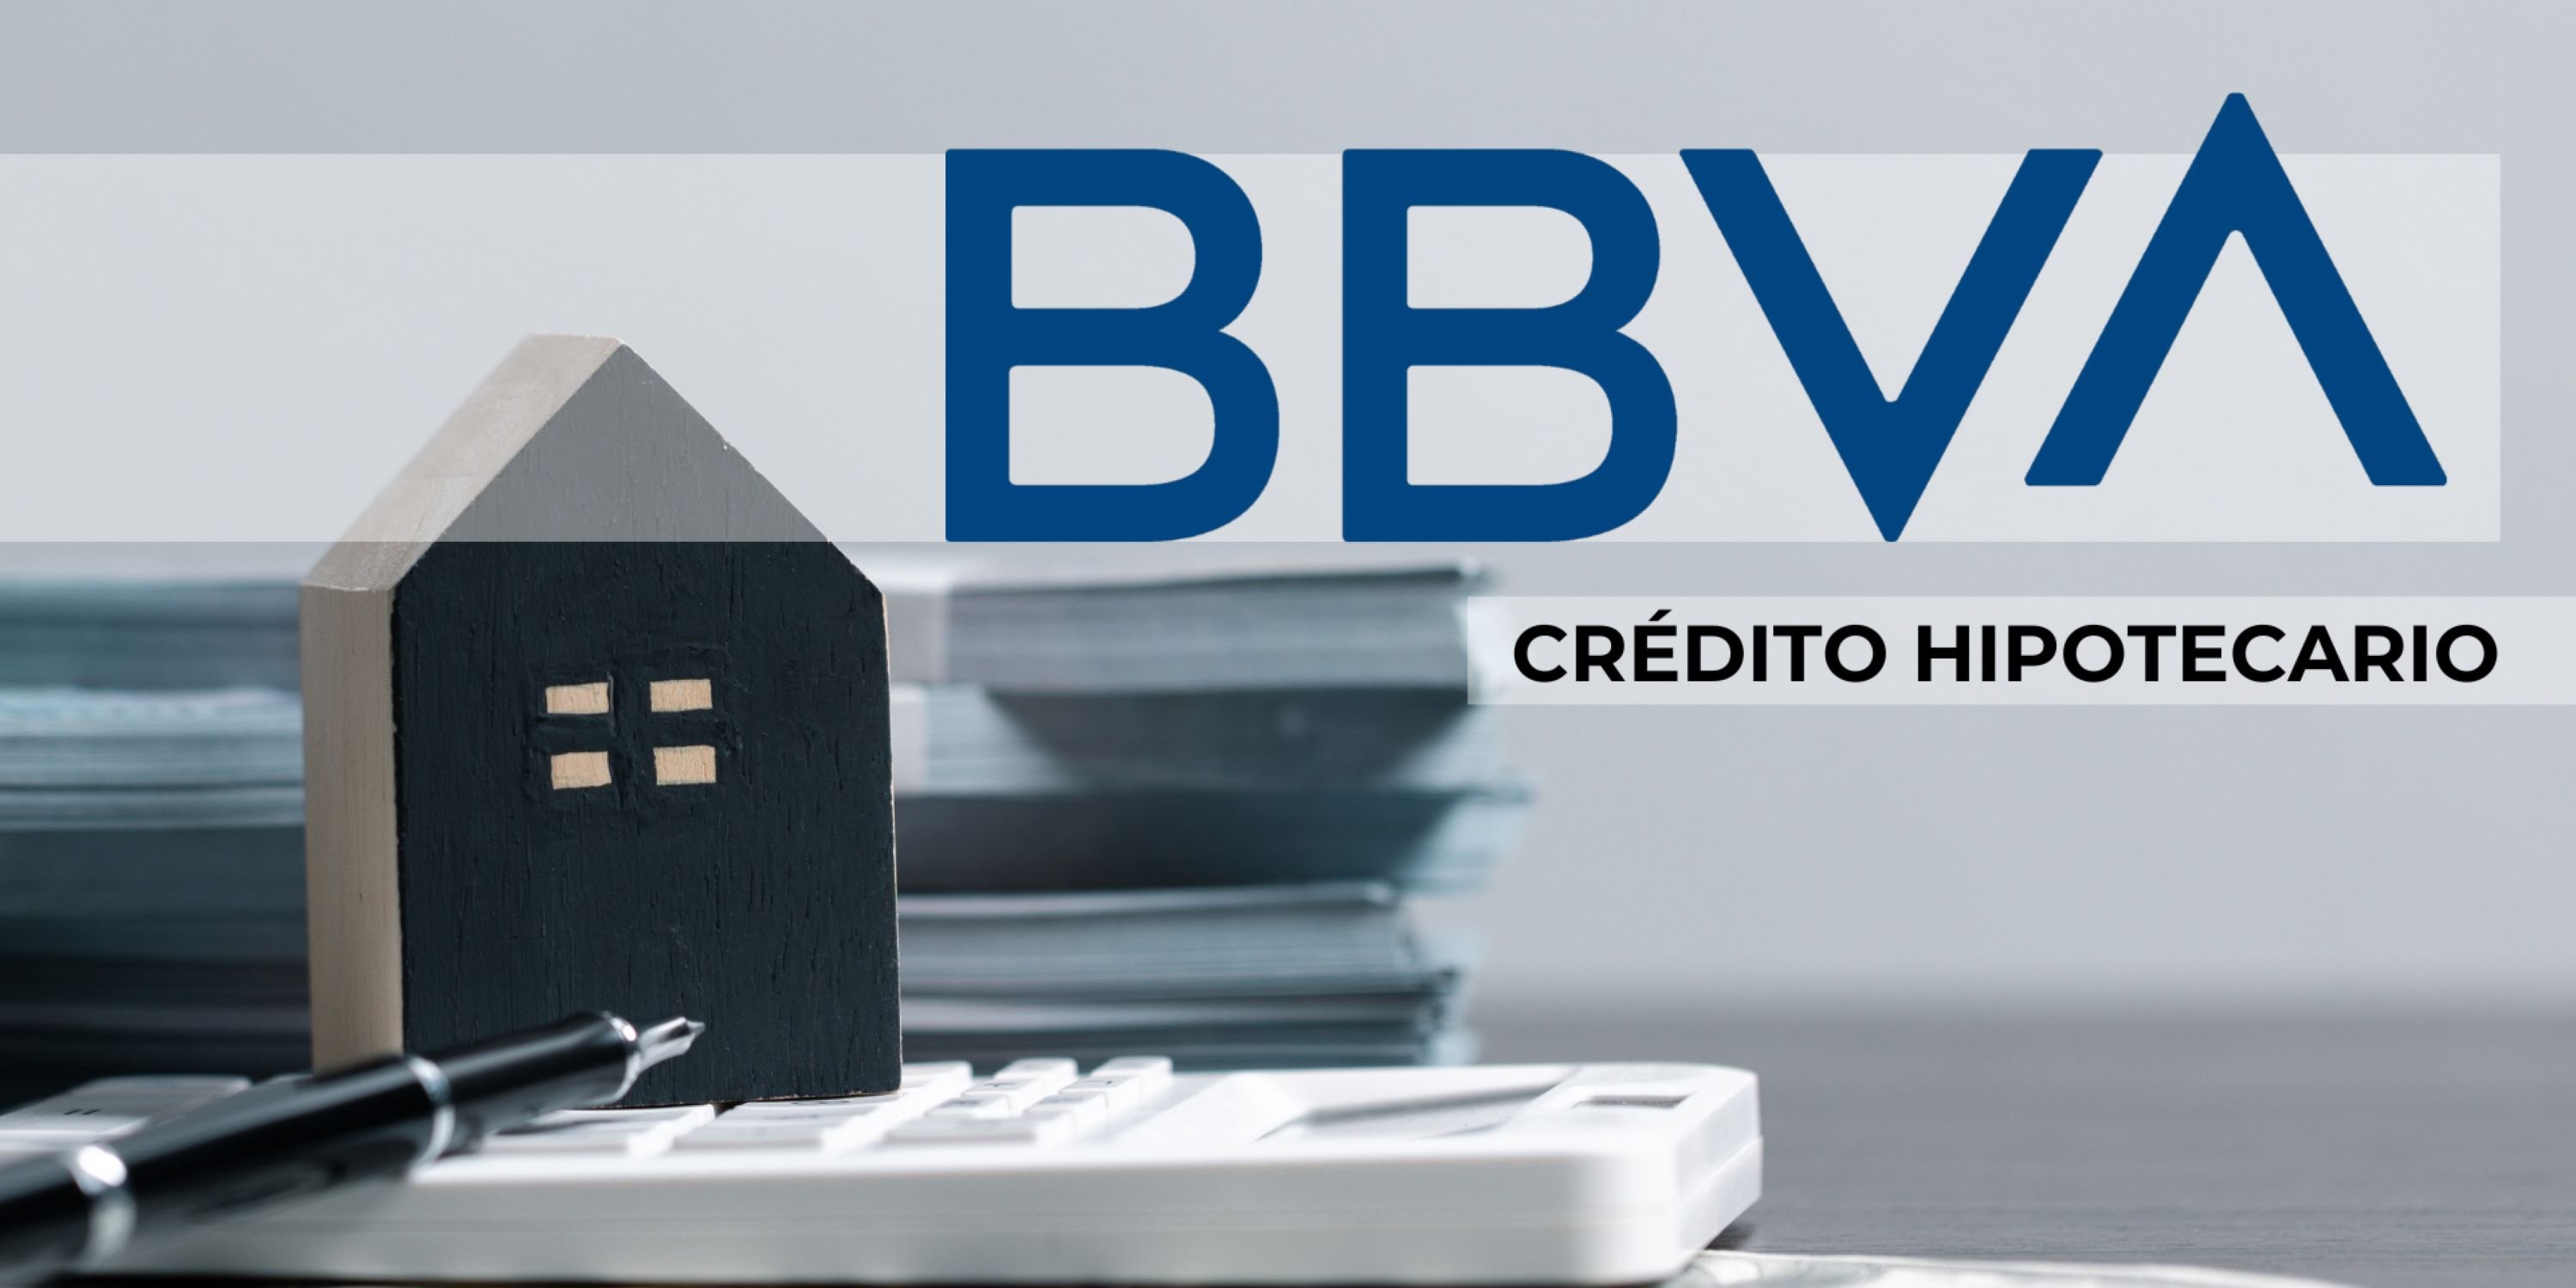 Descubre los pasos clave para obtener un crédito hipotecario con BBVA de manera sencilla y eficiente.